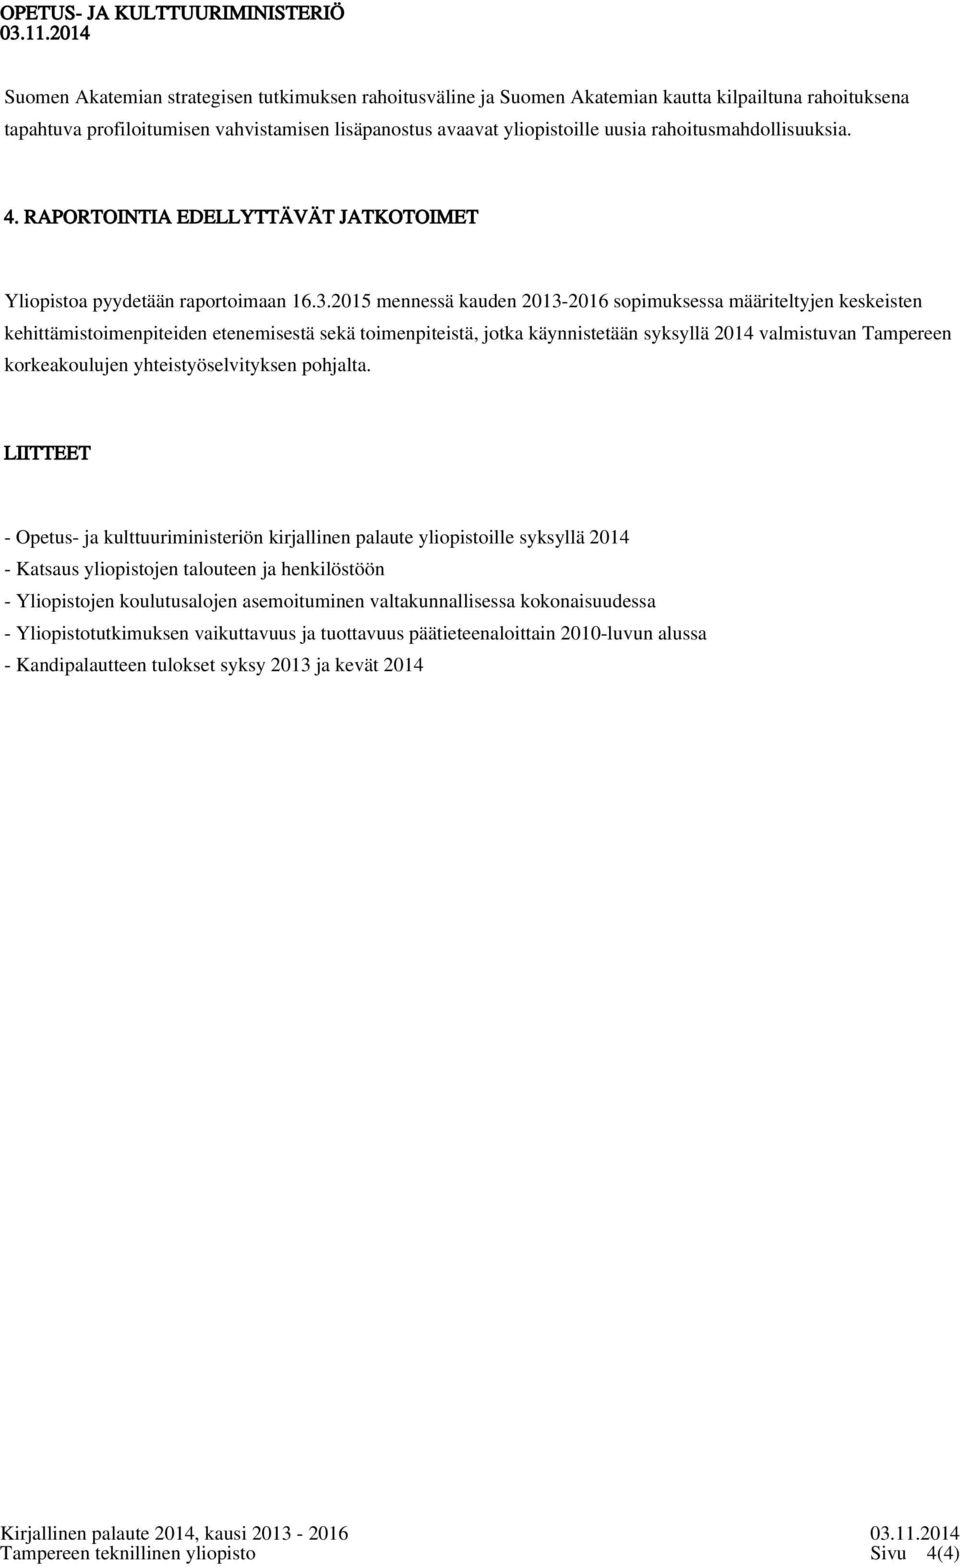 2015 mennessä kauden 2013-2016 sopimuksessa määriteltyjen keskeisten kehittämistoimenpiteiden etenemisestä sekä toimenpiteistä, jotka käynnistetään syksyllä 2014 valmistuvan Tampereen korkeakoulujen